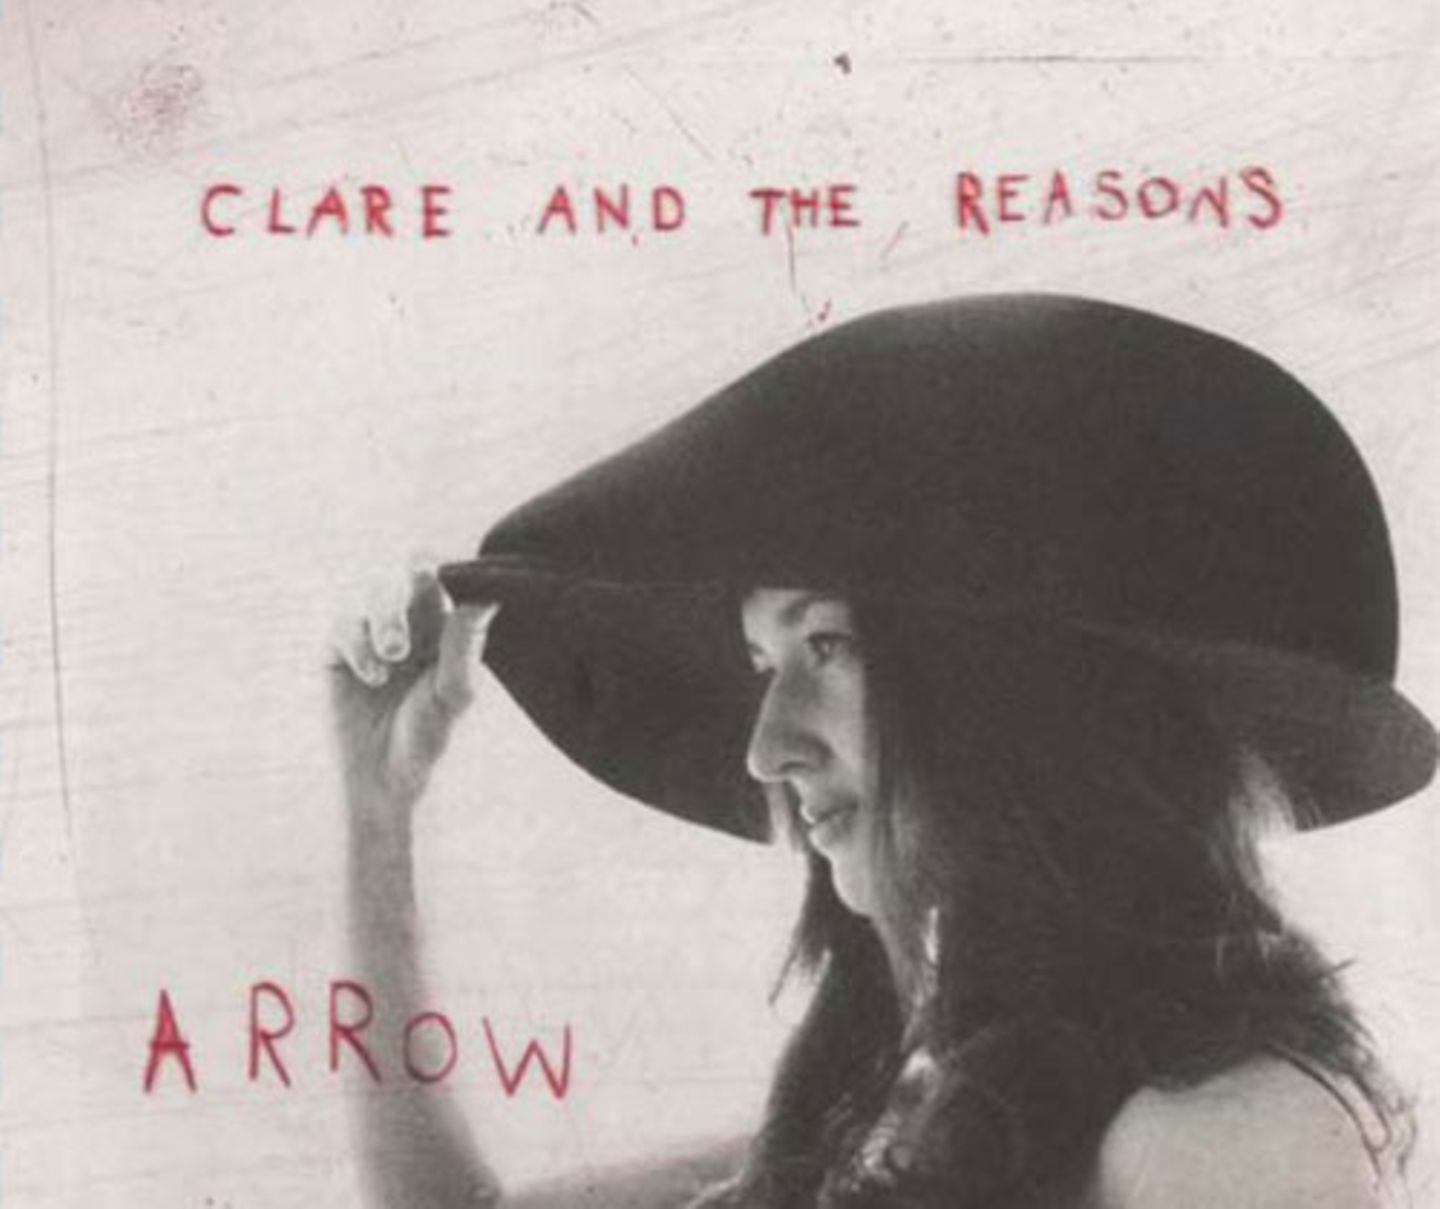 Liebling des Monats von der musikalischen Warte her ist das neue Album der New Yorker Band Clare and the Reasons „Arrow“: Wunderschöner Gesang (sowohl ein- als auch mehrstimmig) und spannende Instrumental-Arrangements (u.a. Streicher, Bläser, Klavier) formen ein in sich stimmiges und variationsreiches Album. Und niemand sonst haucht so zart "Ooh You Hurt Me So", dass wir fast denken könnten, es handele sich um ein Liebeslied... Wir sagen: Eine wohltuende Abwechselung im monotonen Weichspülpop.